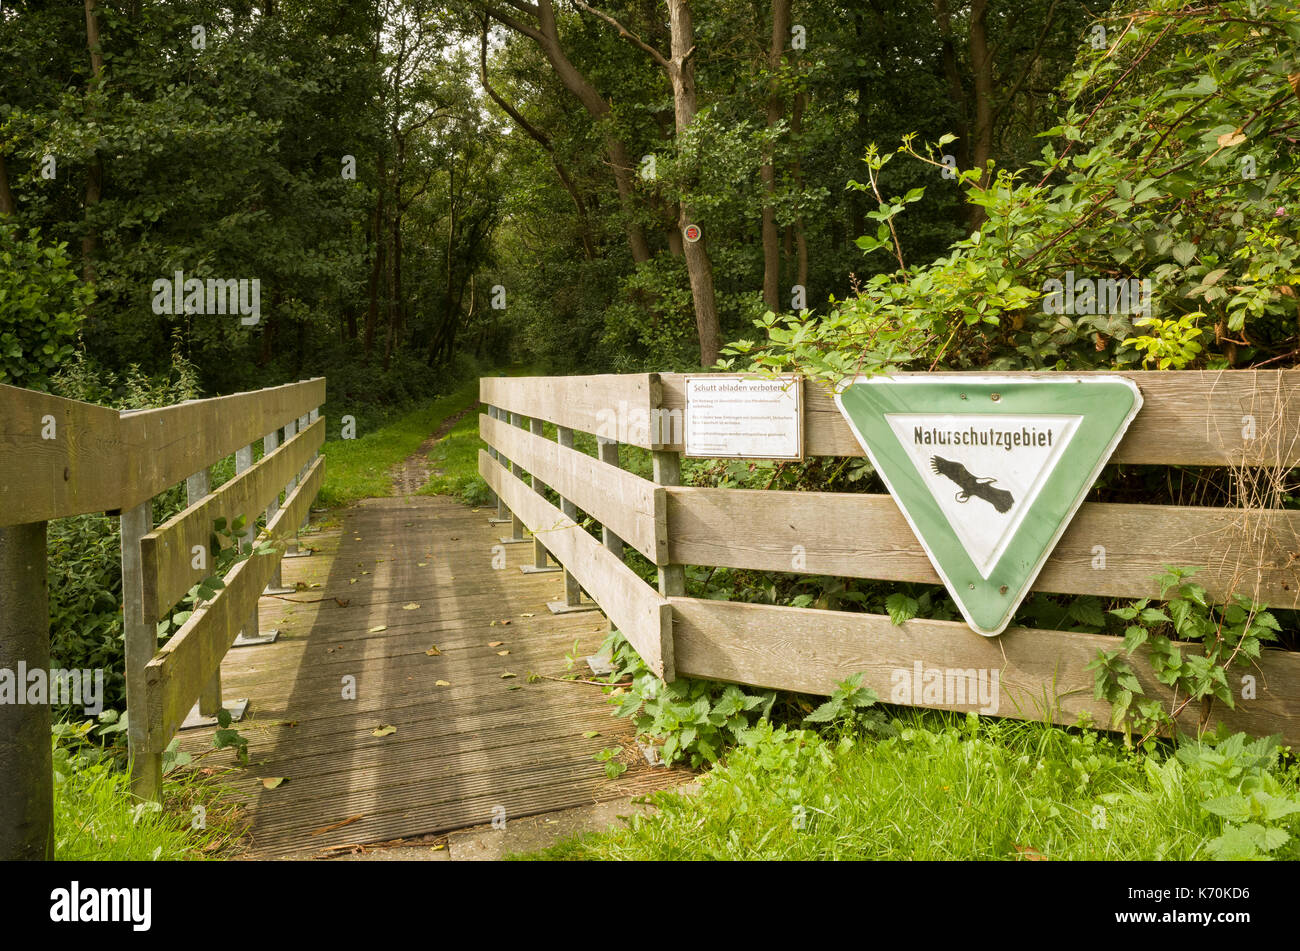 Am Wald, Langeoog. Deutschland. Deutschland. Ein Fußweg und kleine Holzbrücke in die natürlichen Wälder führt. Das Zeichen, 'Naturschutzgebeit', für die natürliche befindet sich auf der hölzernen Zaun führenden auf zur Brücke über einen Graben und in das Holz positioniert. Dappled Sonnenlicht erzeugt Muster auf den Boden. Stockfoto